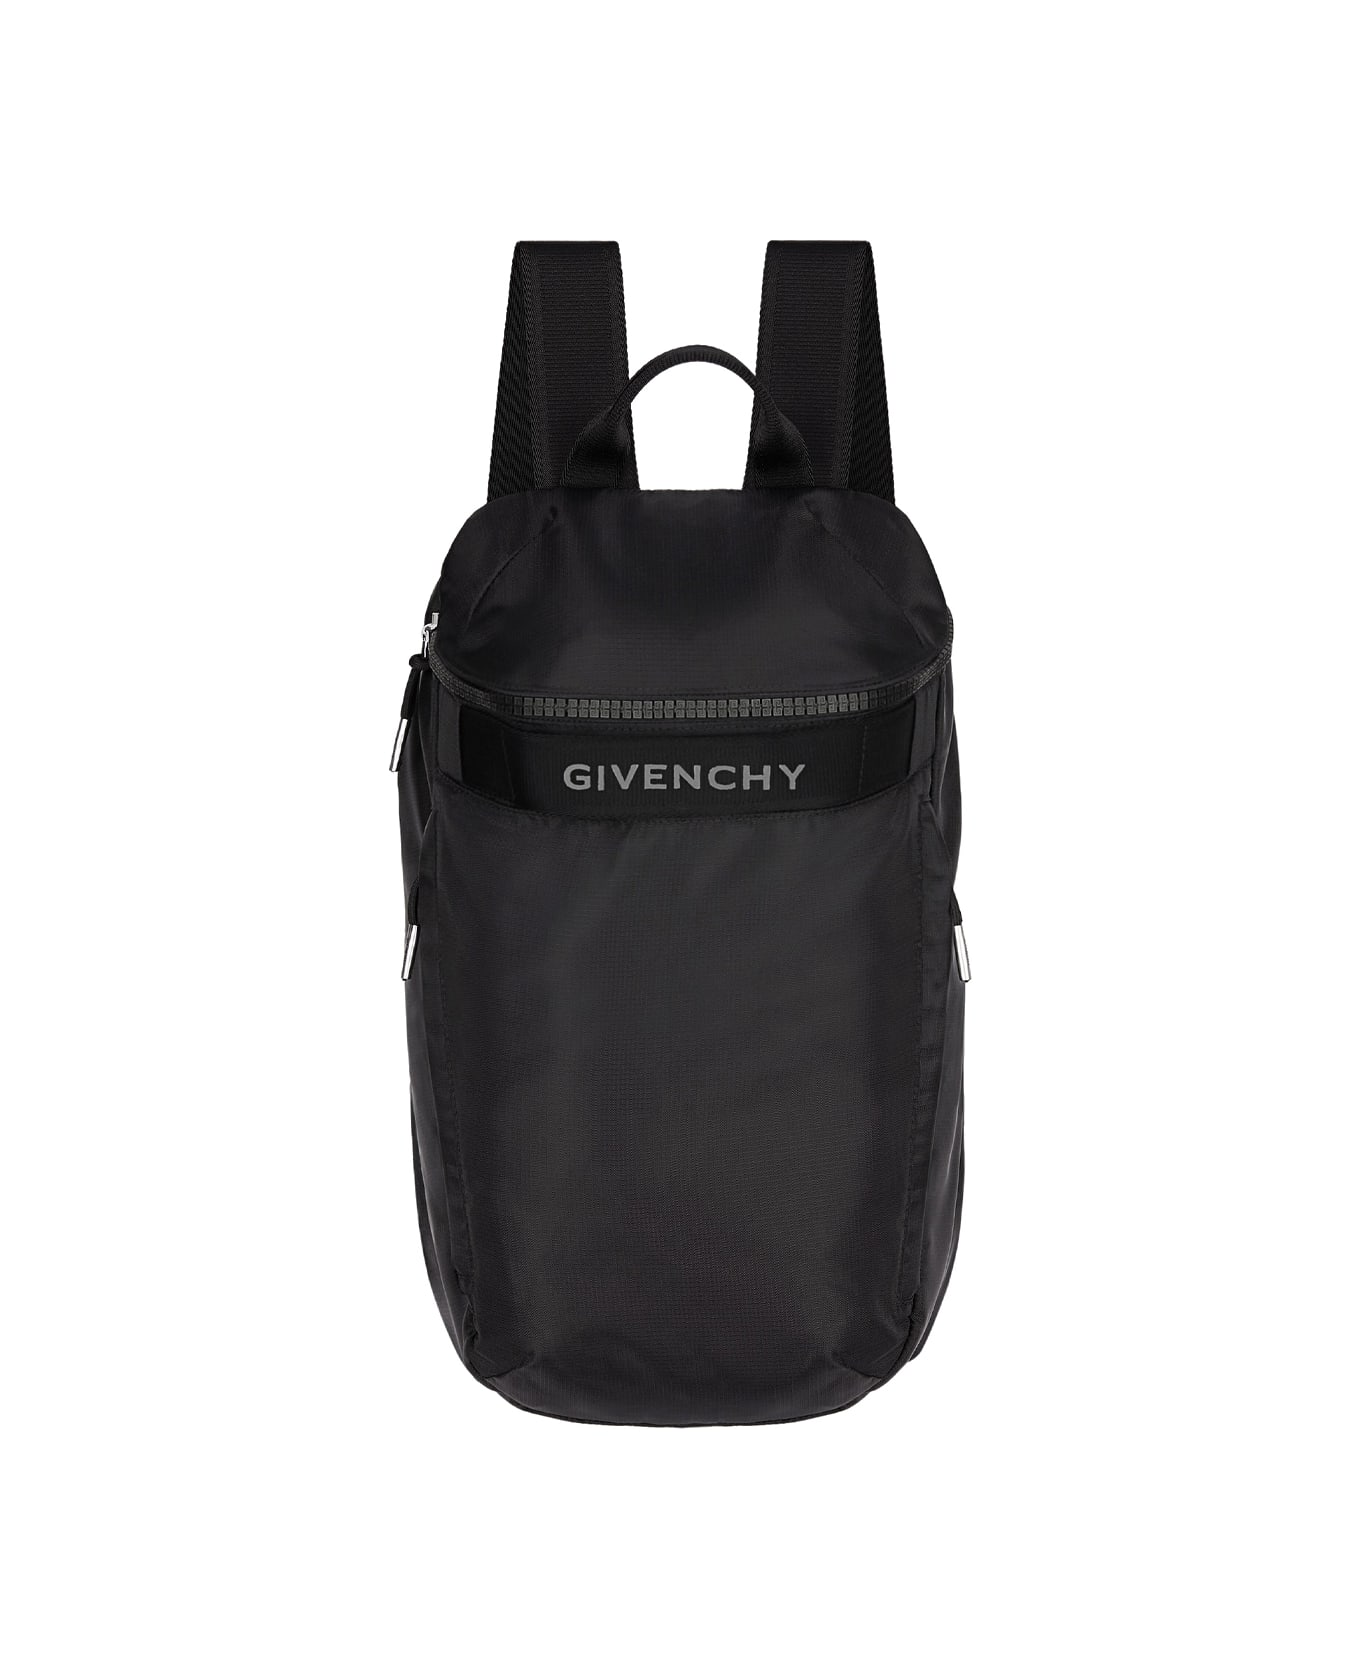 Givenchy G-trek Backpack In Black Nylon - Black バックパック